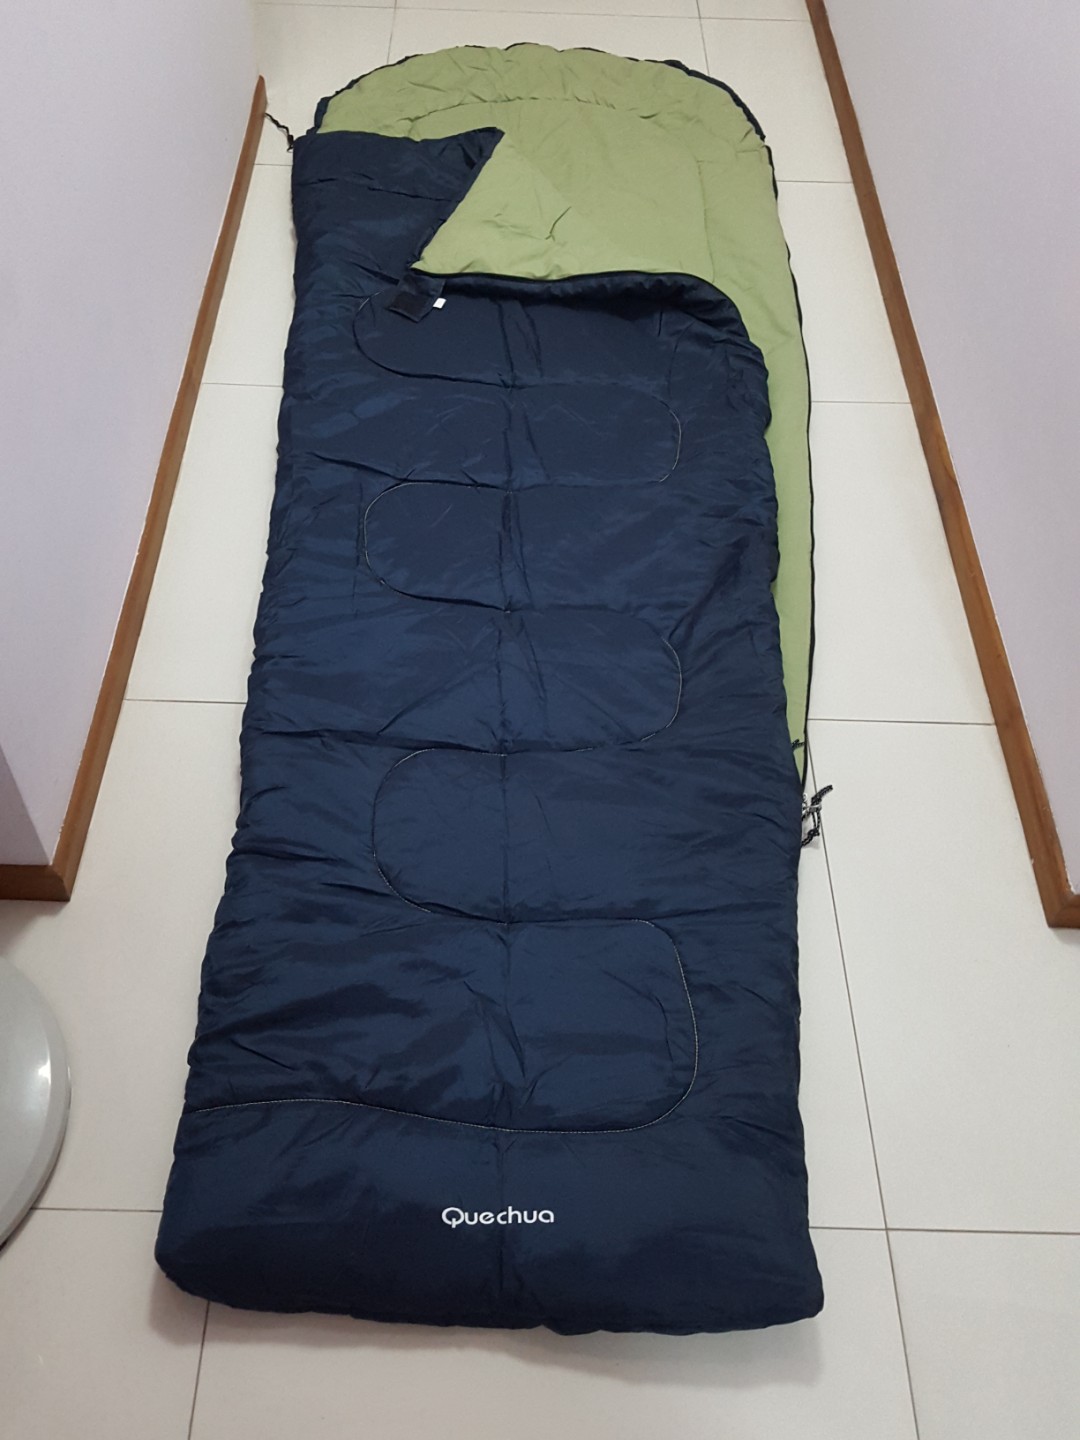 quechua sleeping bag s10